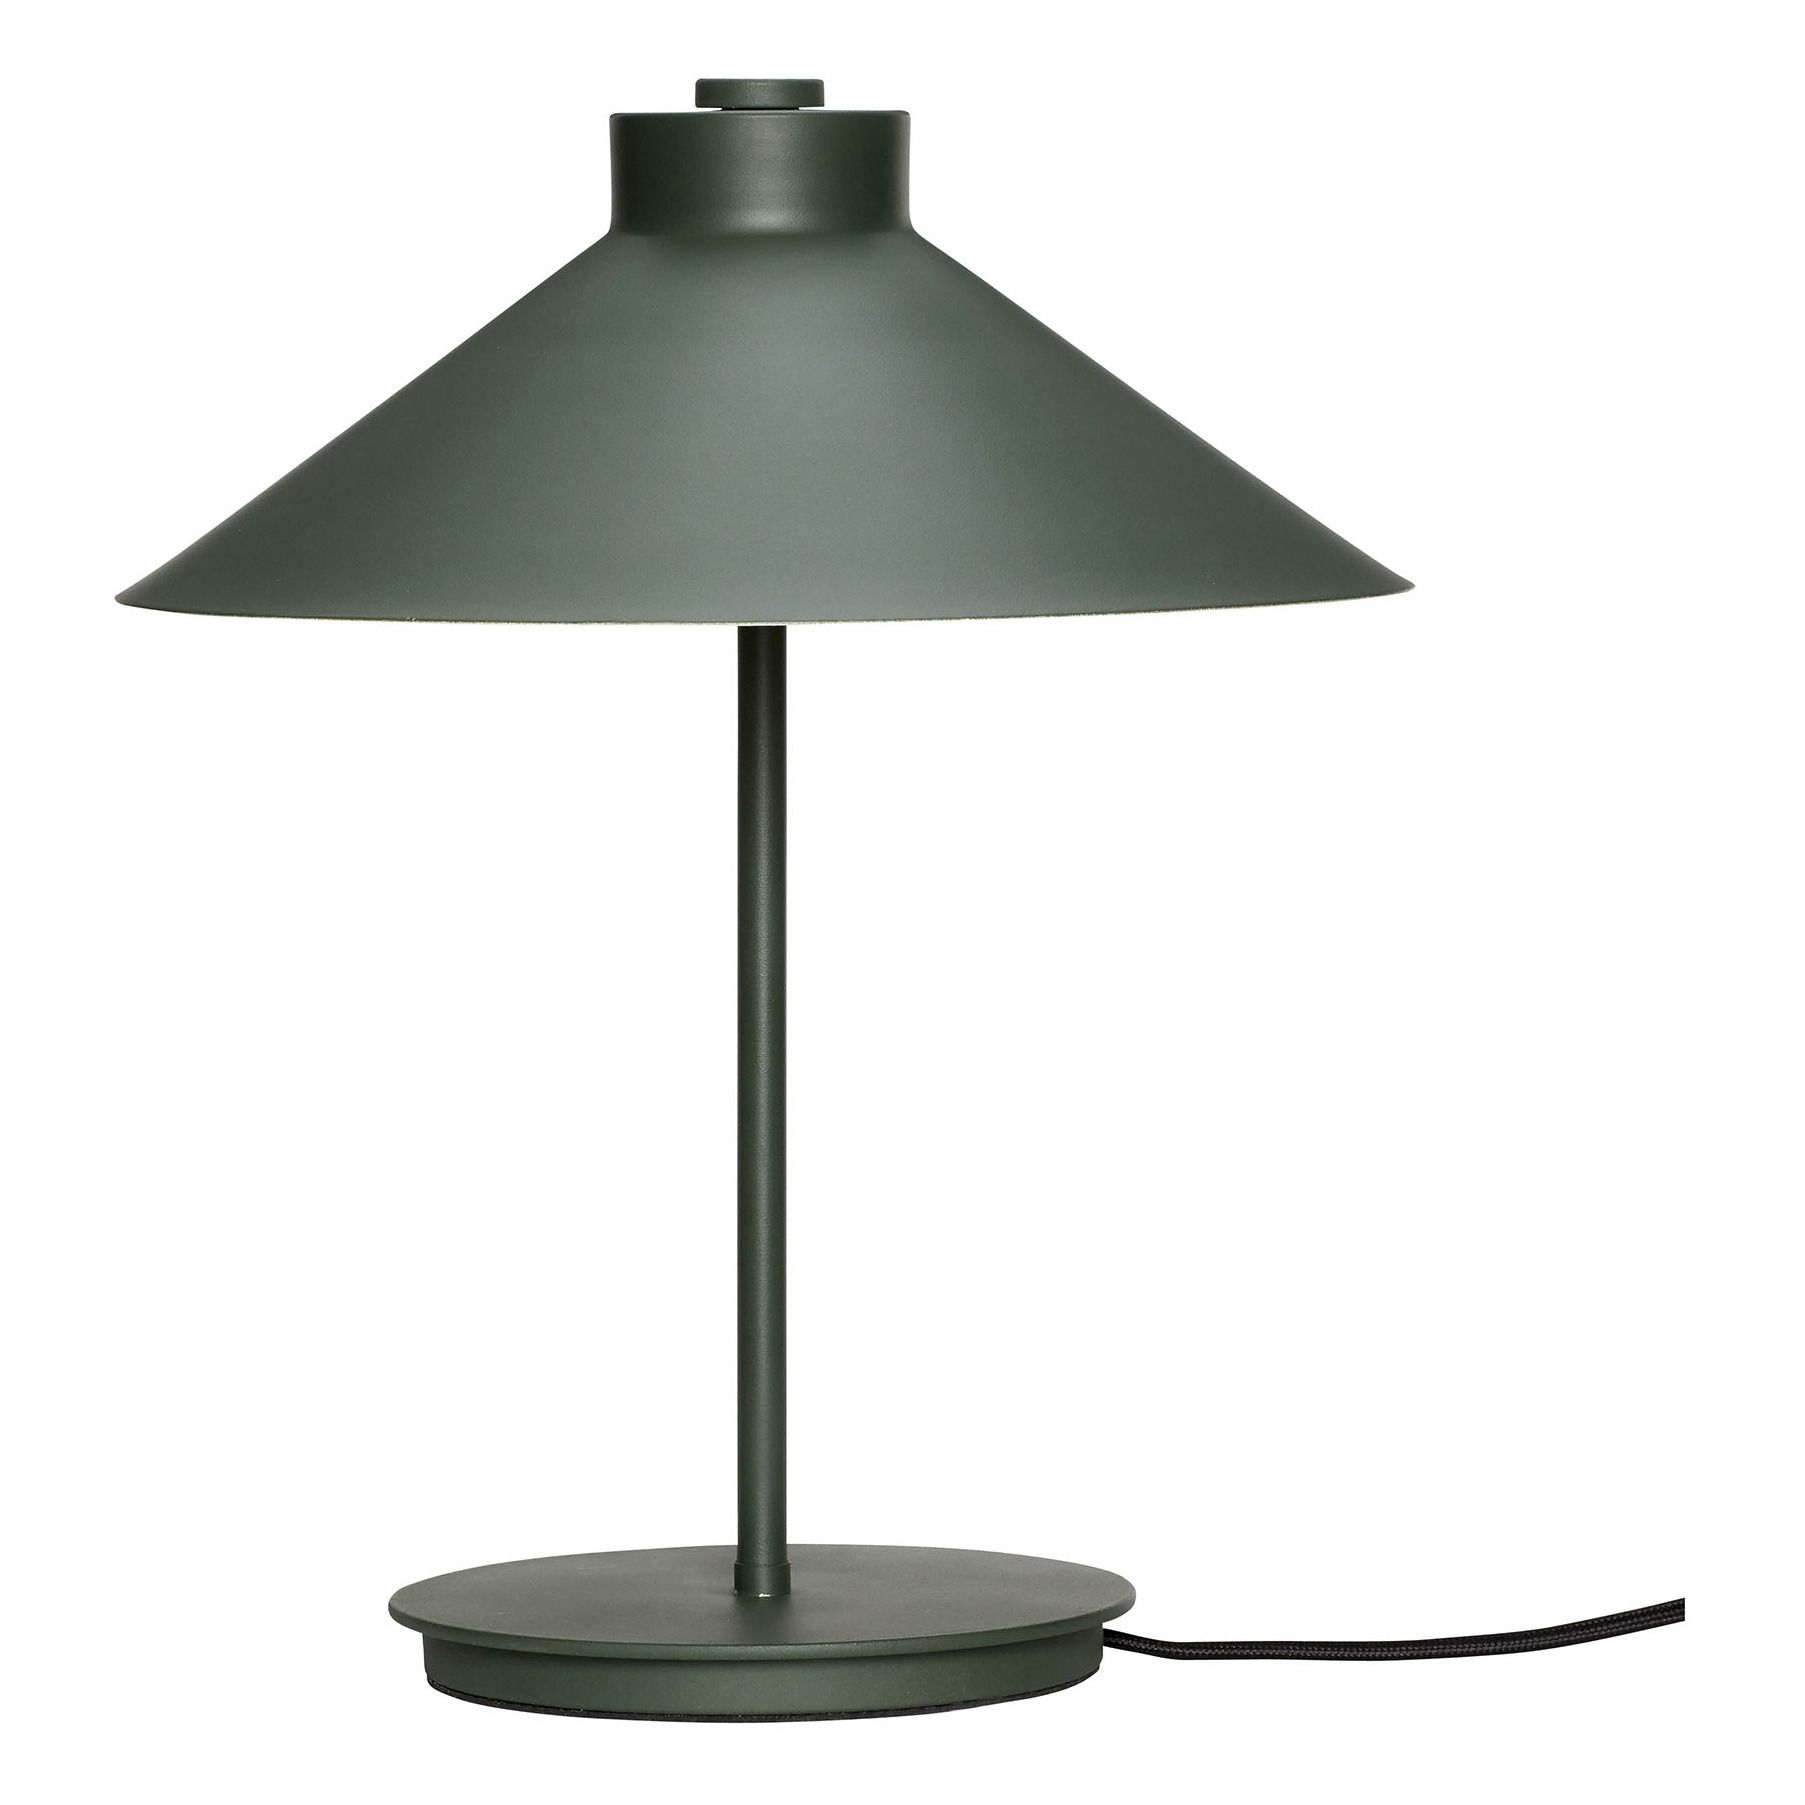 Hübsch - Lampe à poser en métal - Vert foncé